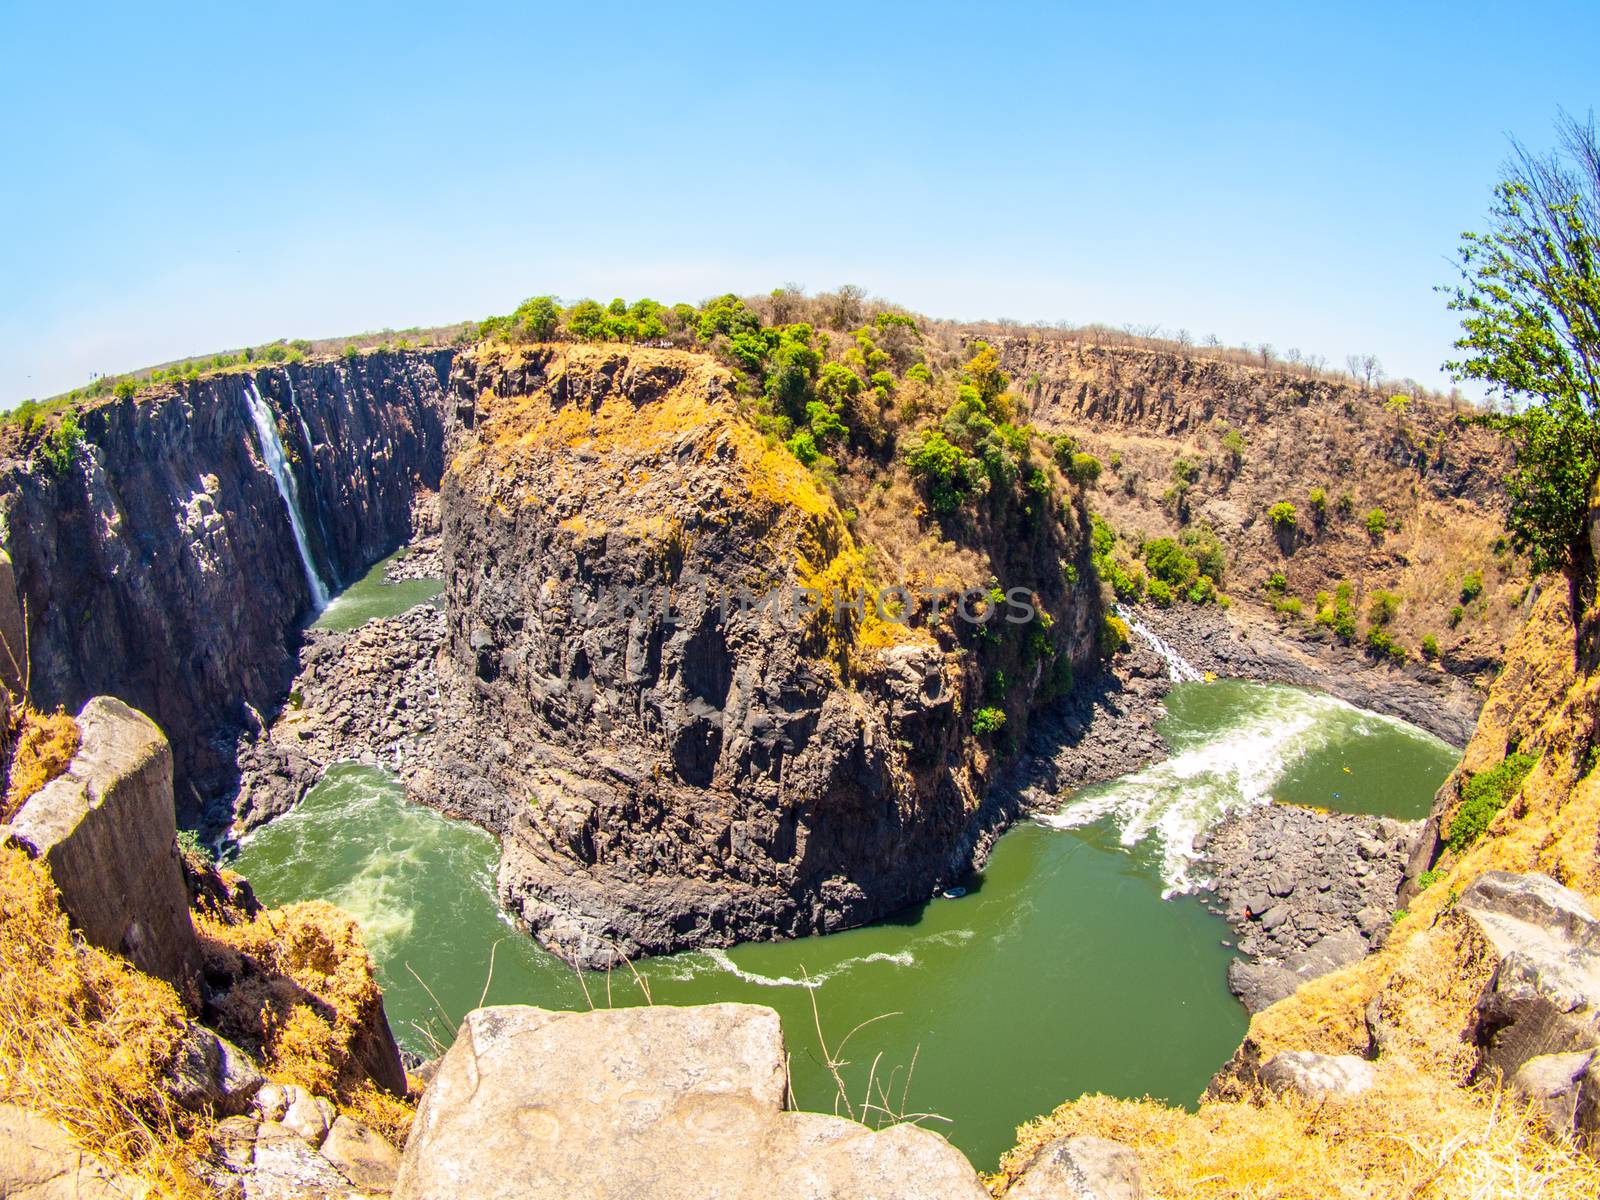 Victoria Falls on Zambezi River. Dry season. Border between Zimbabwe and Zambia, Africa. Fisheye shot.